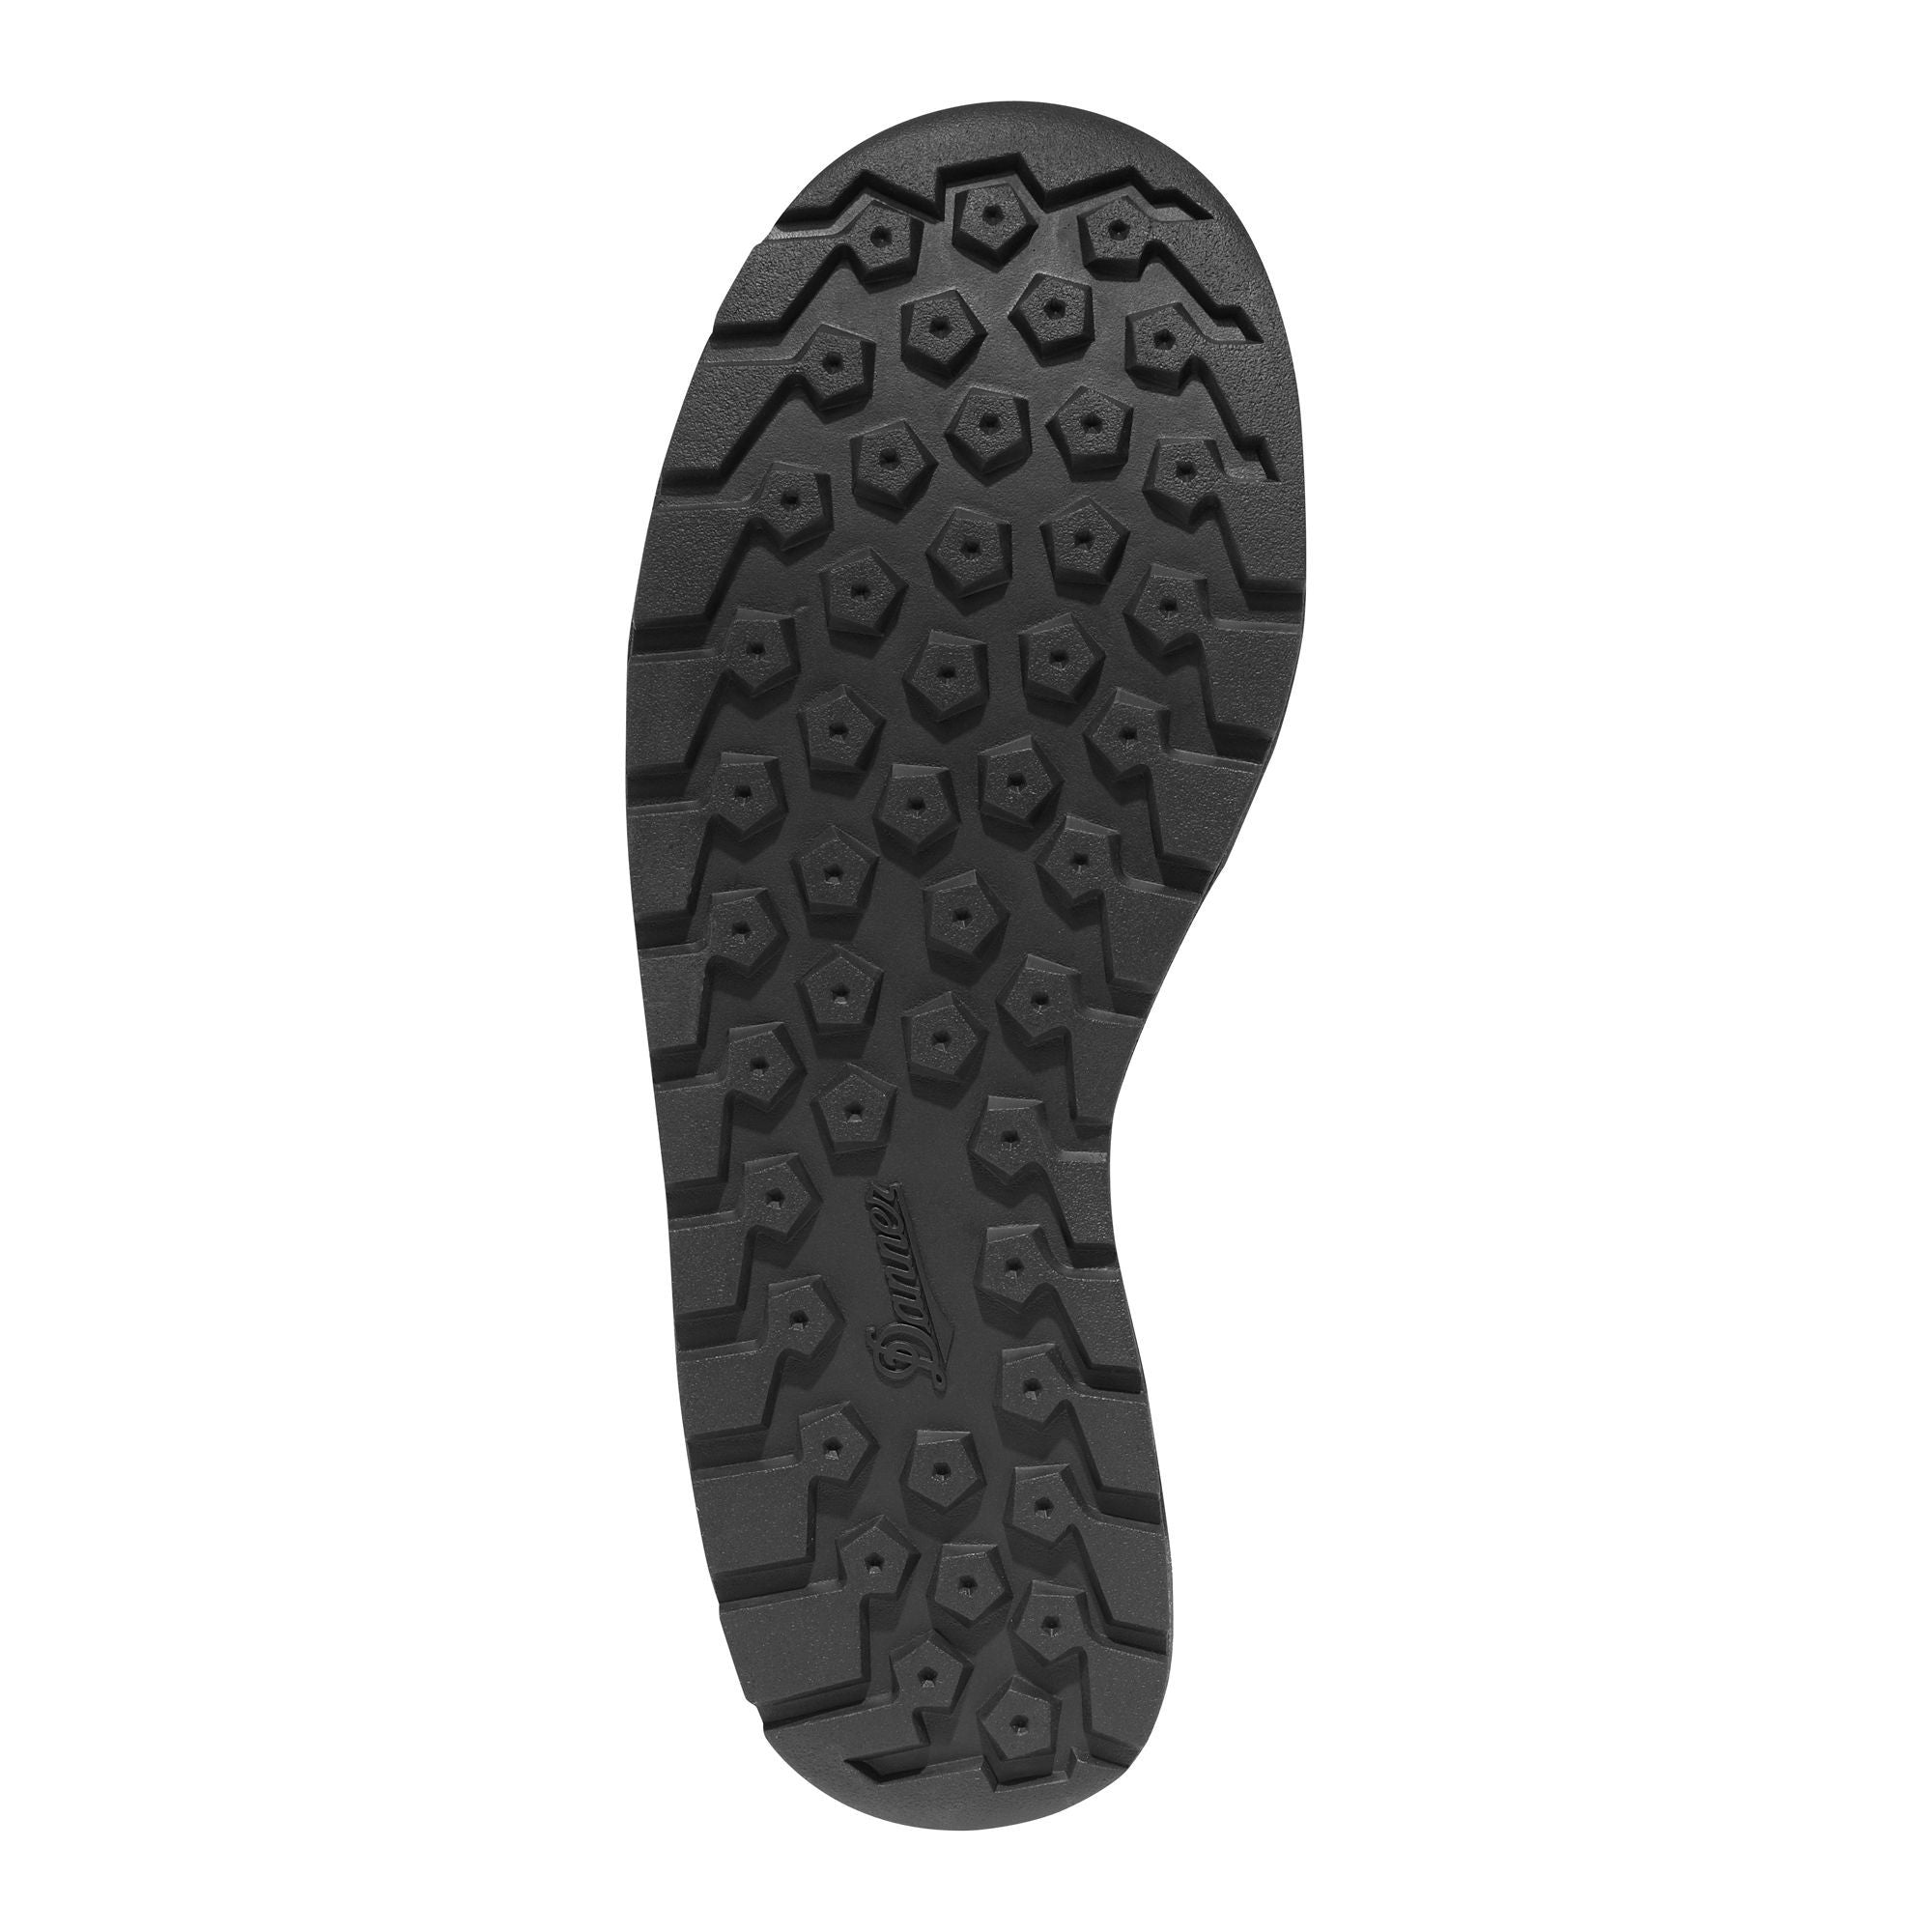 Danner Men's Tachayon Waterproof Duty Boot - Black - 50122  - Overlook Boots